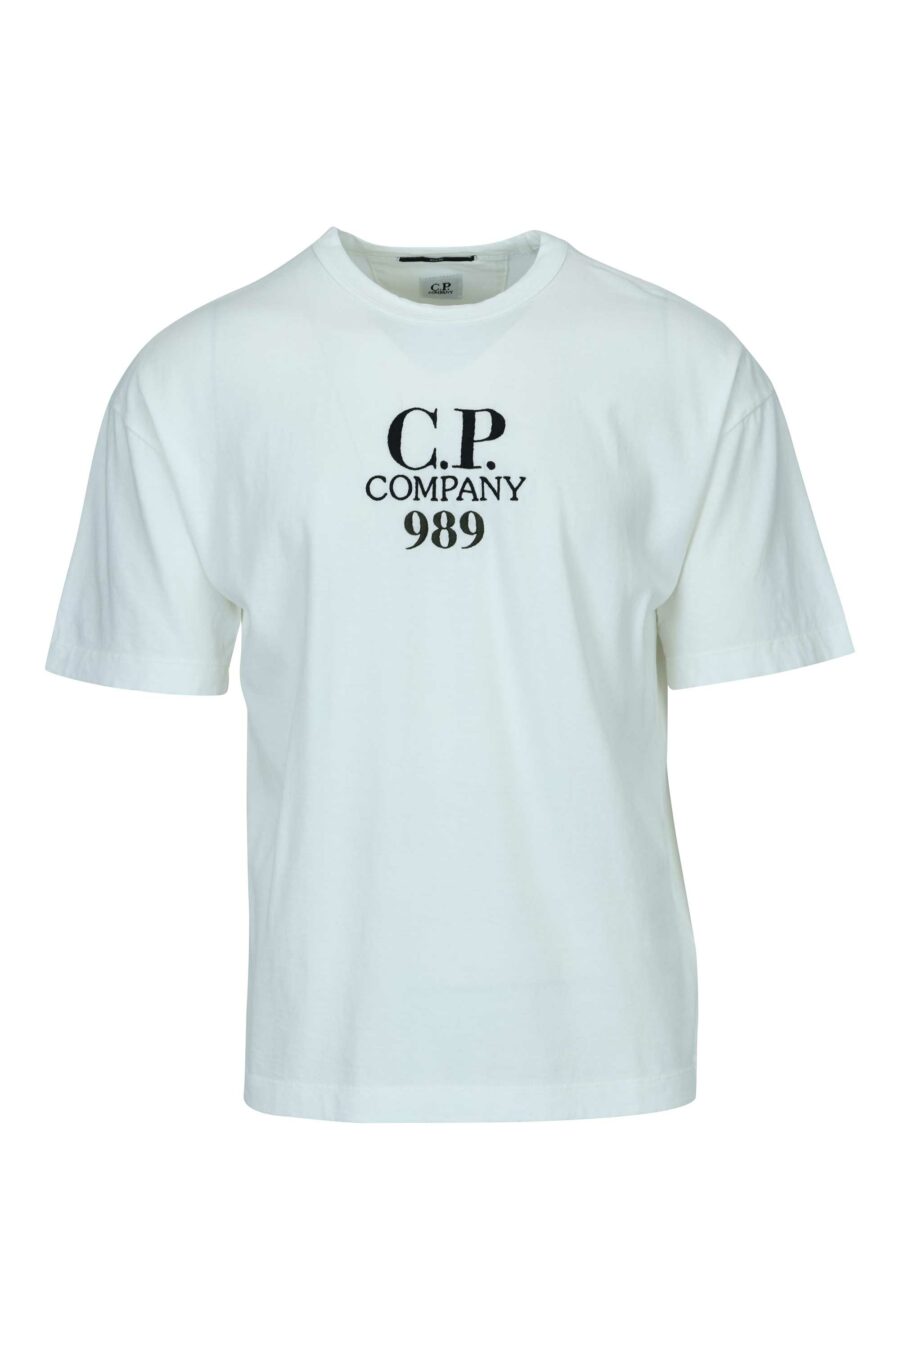 Weißes Oversize-T-Shirt mit Minilogue "cp 989" - 7620943818840